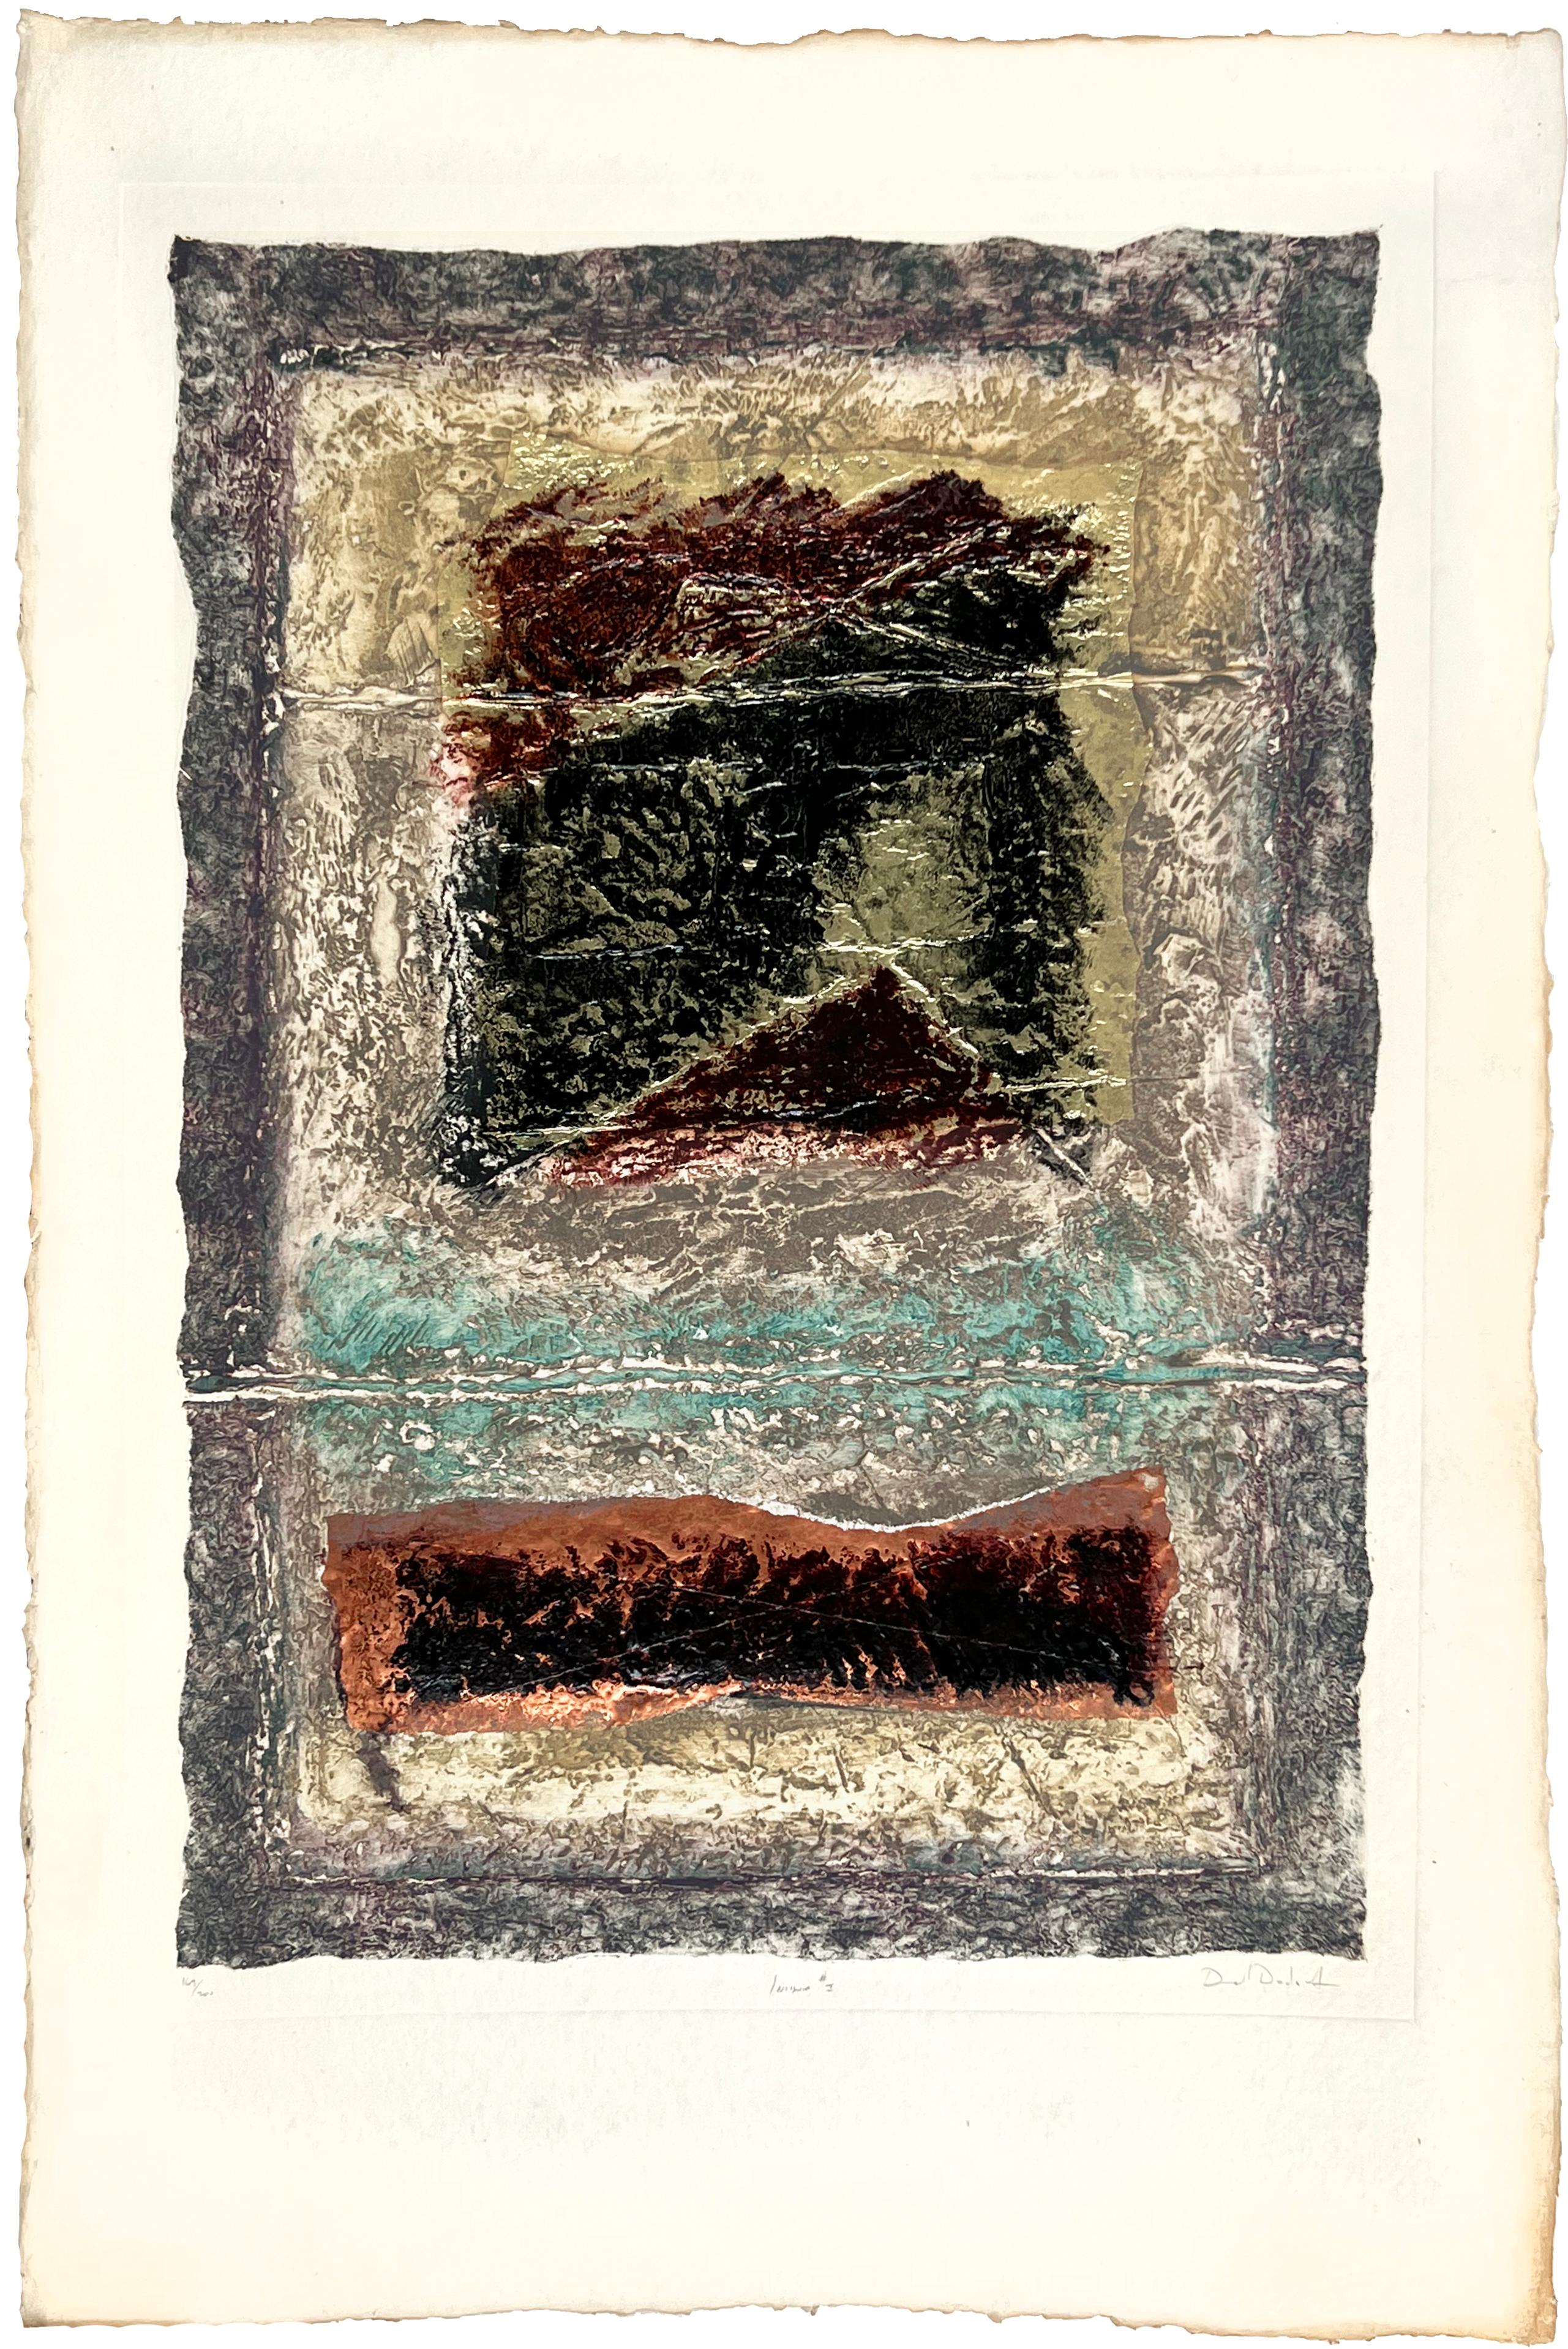 David Dodsworth Abstract Print - "Insignia" #1 Hand Made Paper Aquatint Abstract